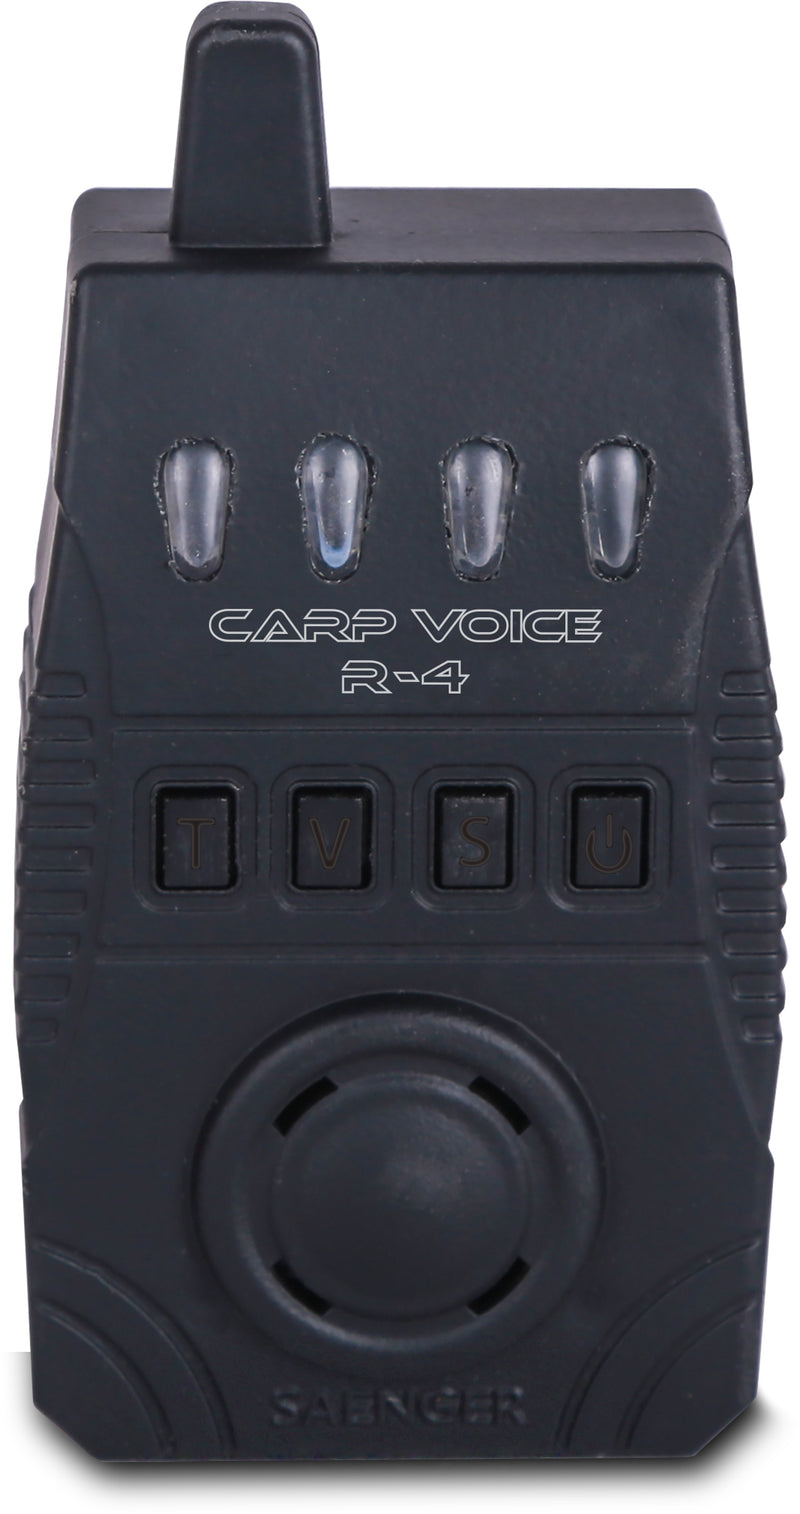 SAENGER Carp Voice R-4 Set 4+1  | Bissanzeiger